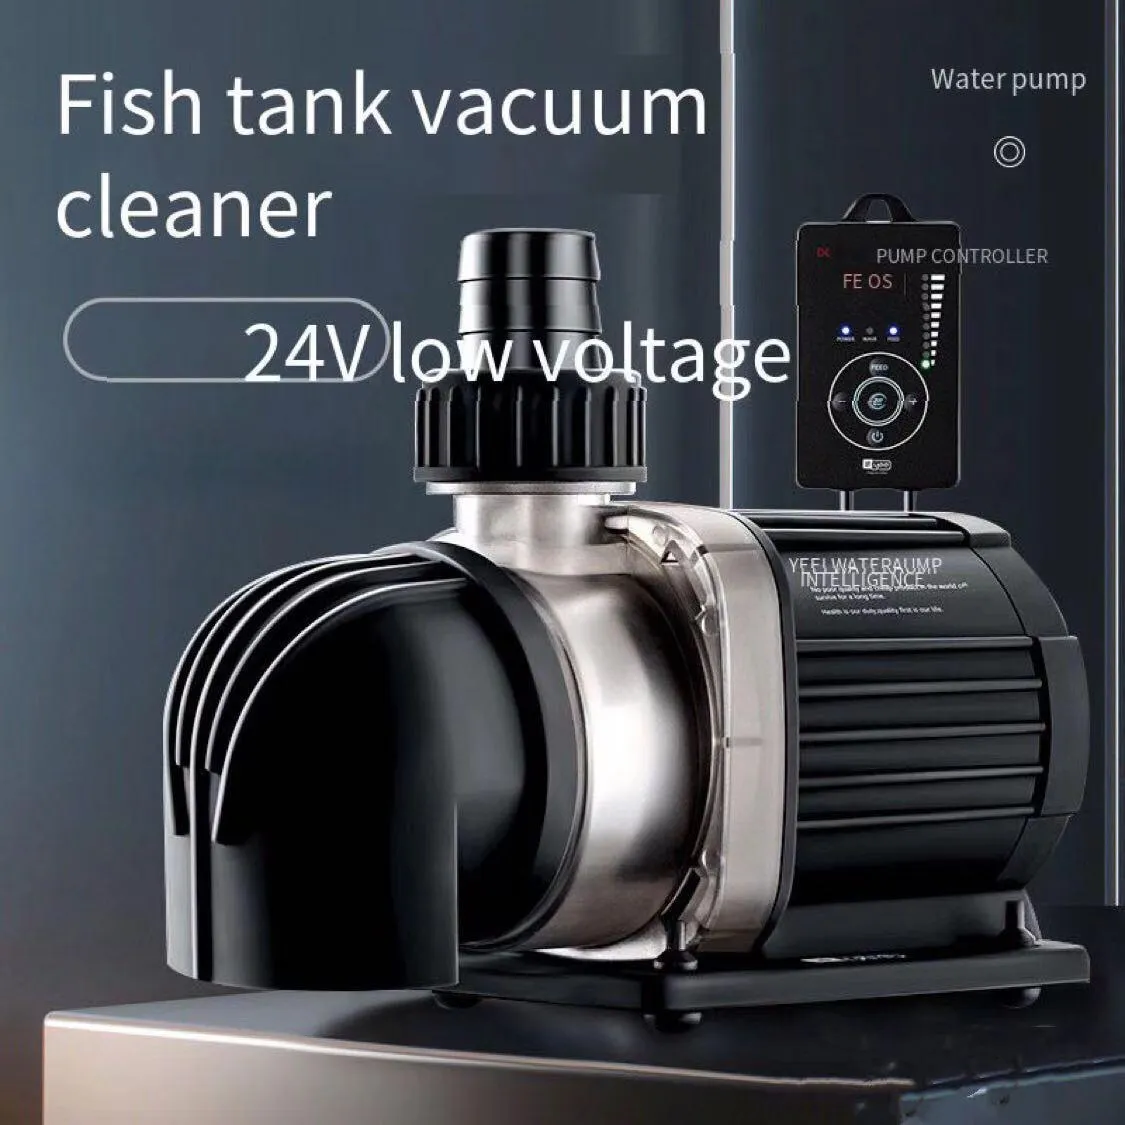 Pompes 24V haute puissance pompe submersible aquarium filtre pompe pompe à eau fréquence variable ultra économie d'énergie silencieux aquarium accessori